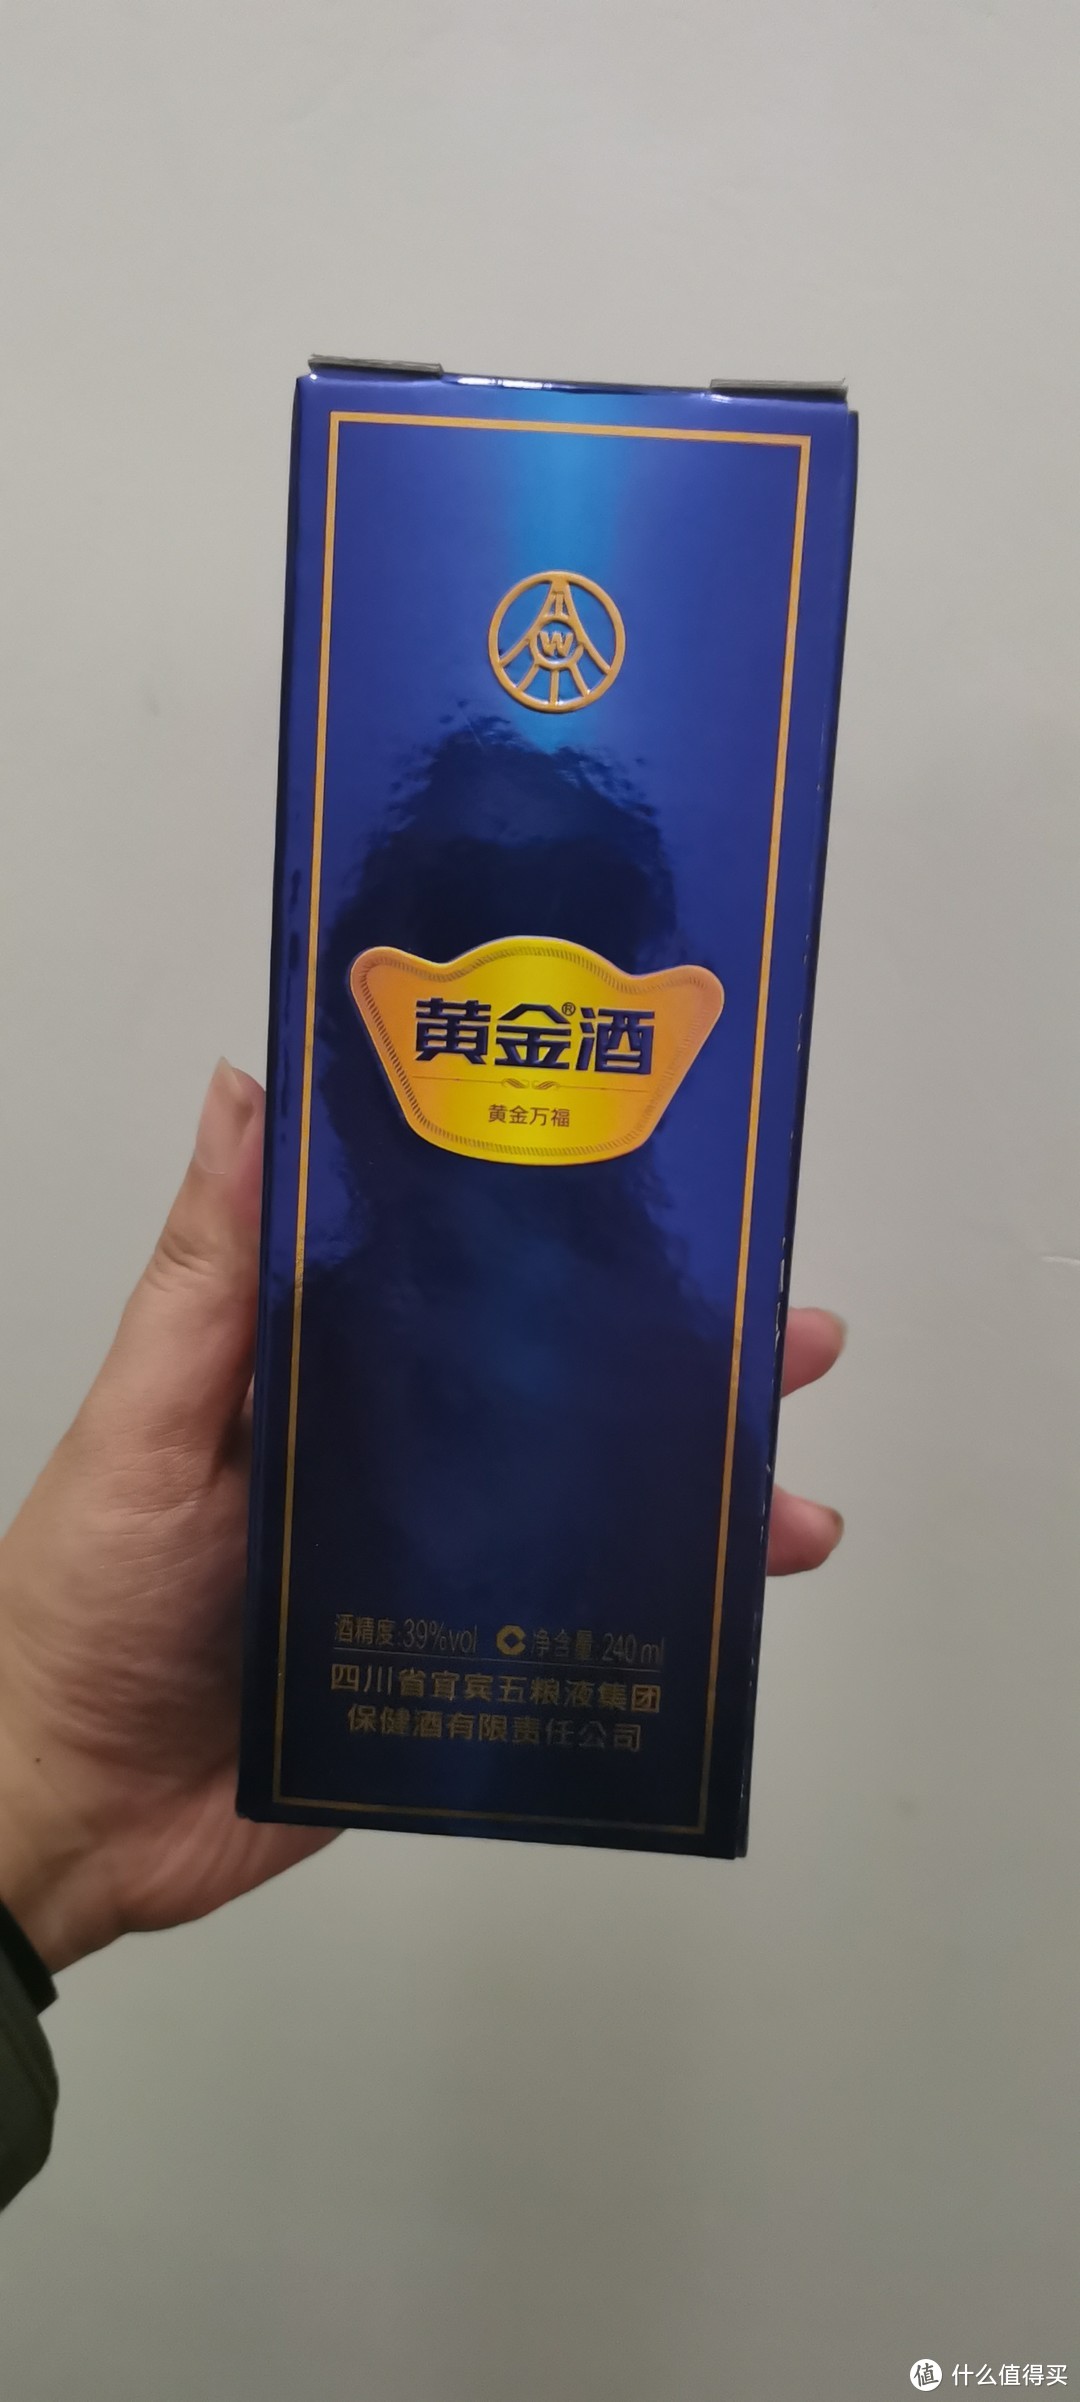 荣膺“2022中国酒业杰出酱酒品牌” 摘要酒彰显头部品牌力量-中国质量新闻网